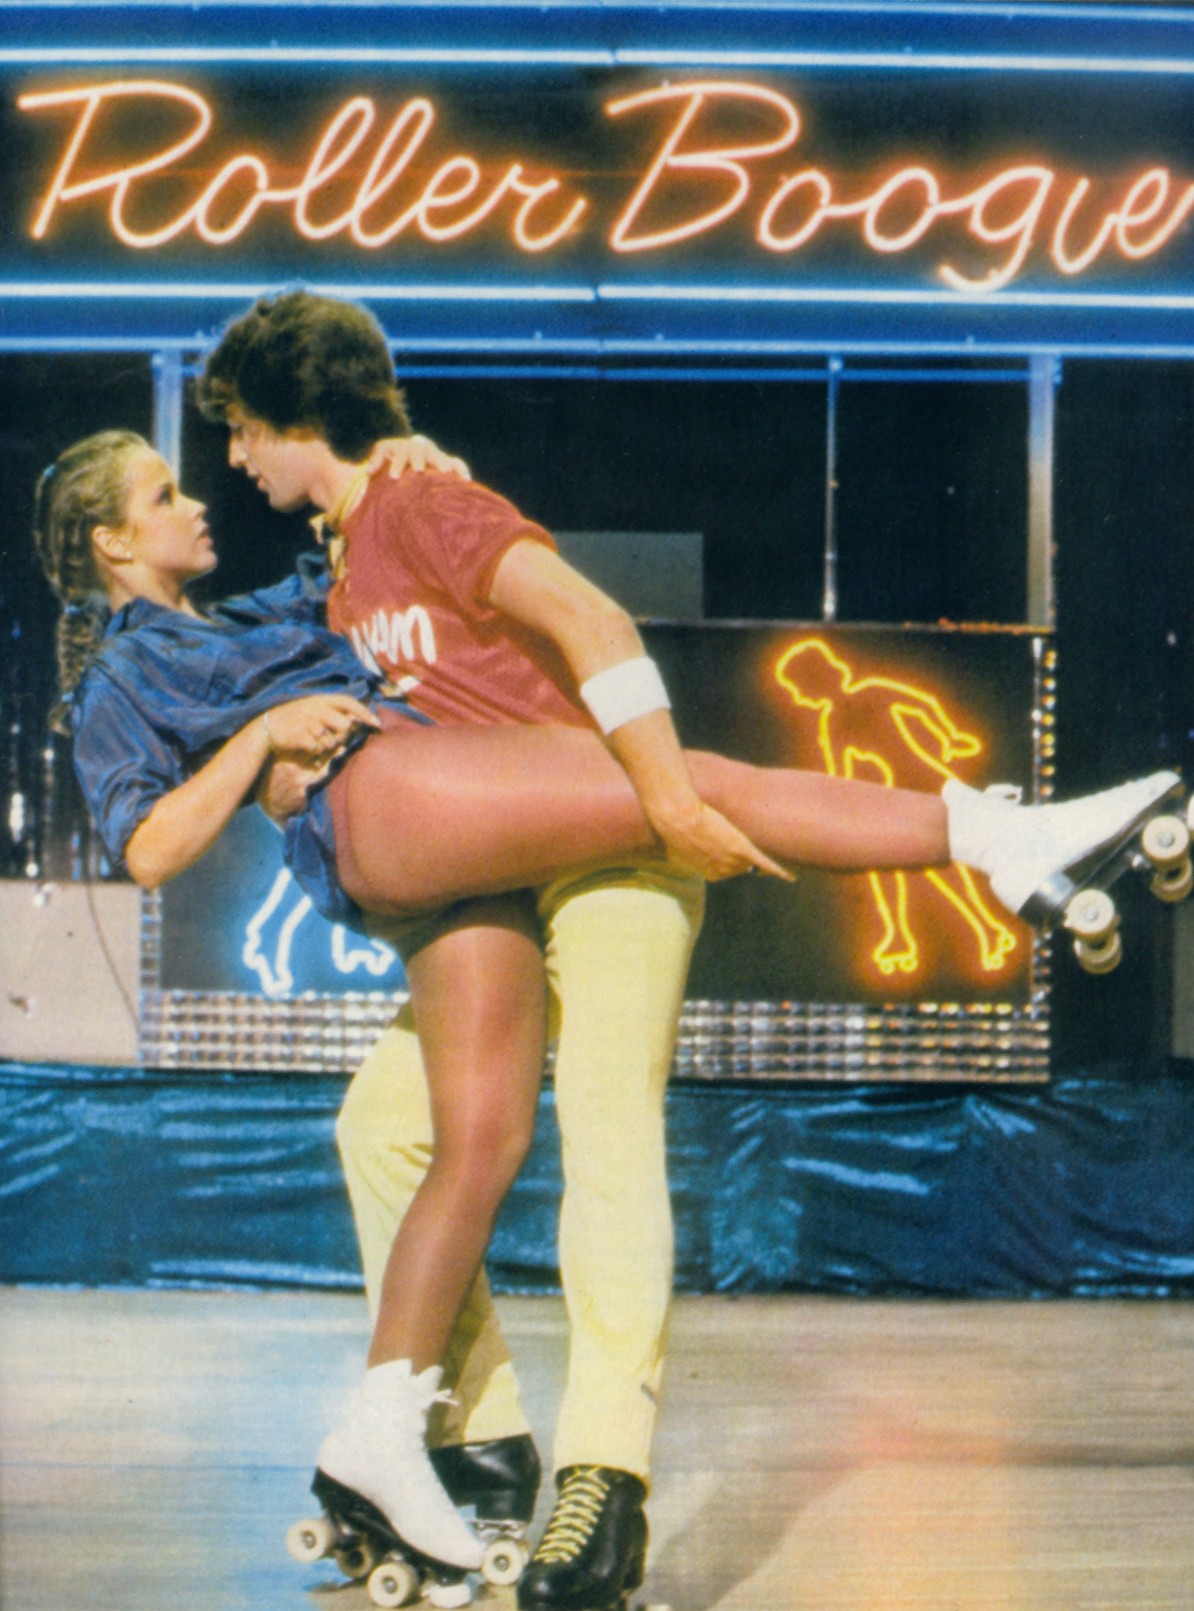 Roller Boogie [1979]